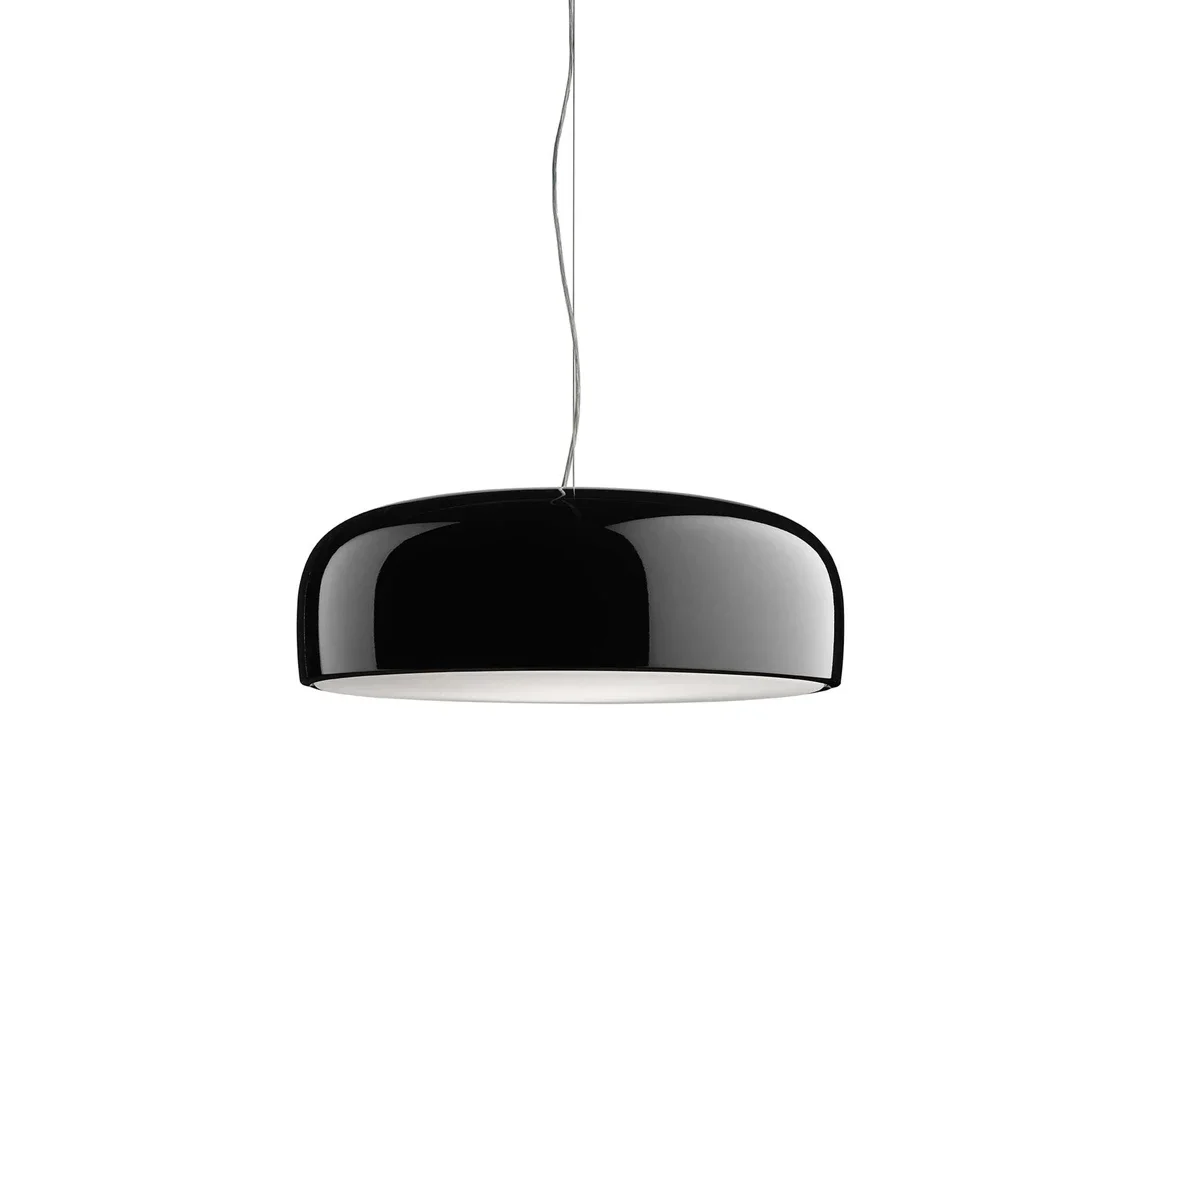 

Italian Designer LED Pendant Lamp for Living Dining Room Restaurant Ceiling Hanging Home Decor Chandelier Light Black White Lamp